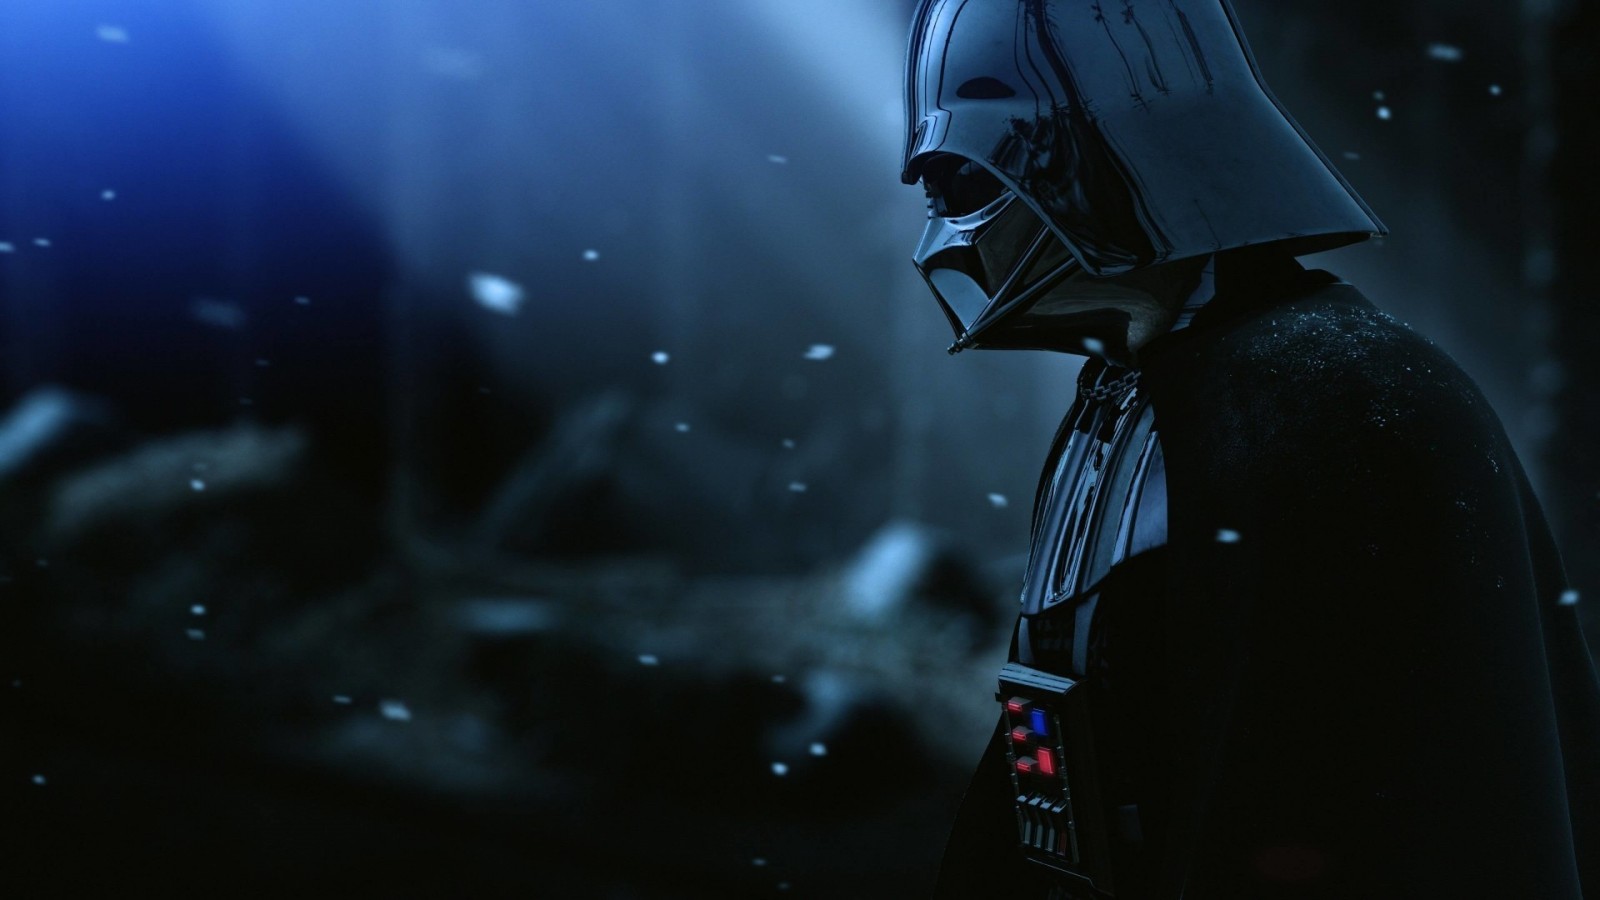 Darth Vader - The Force Unleashed 2 Wallpaper for Desktop 1600x900